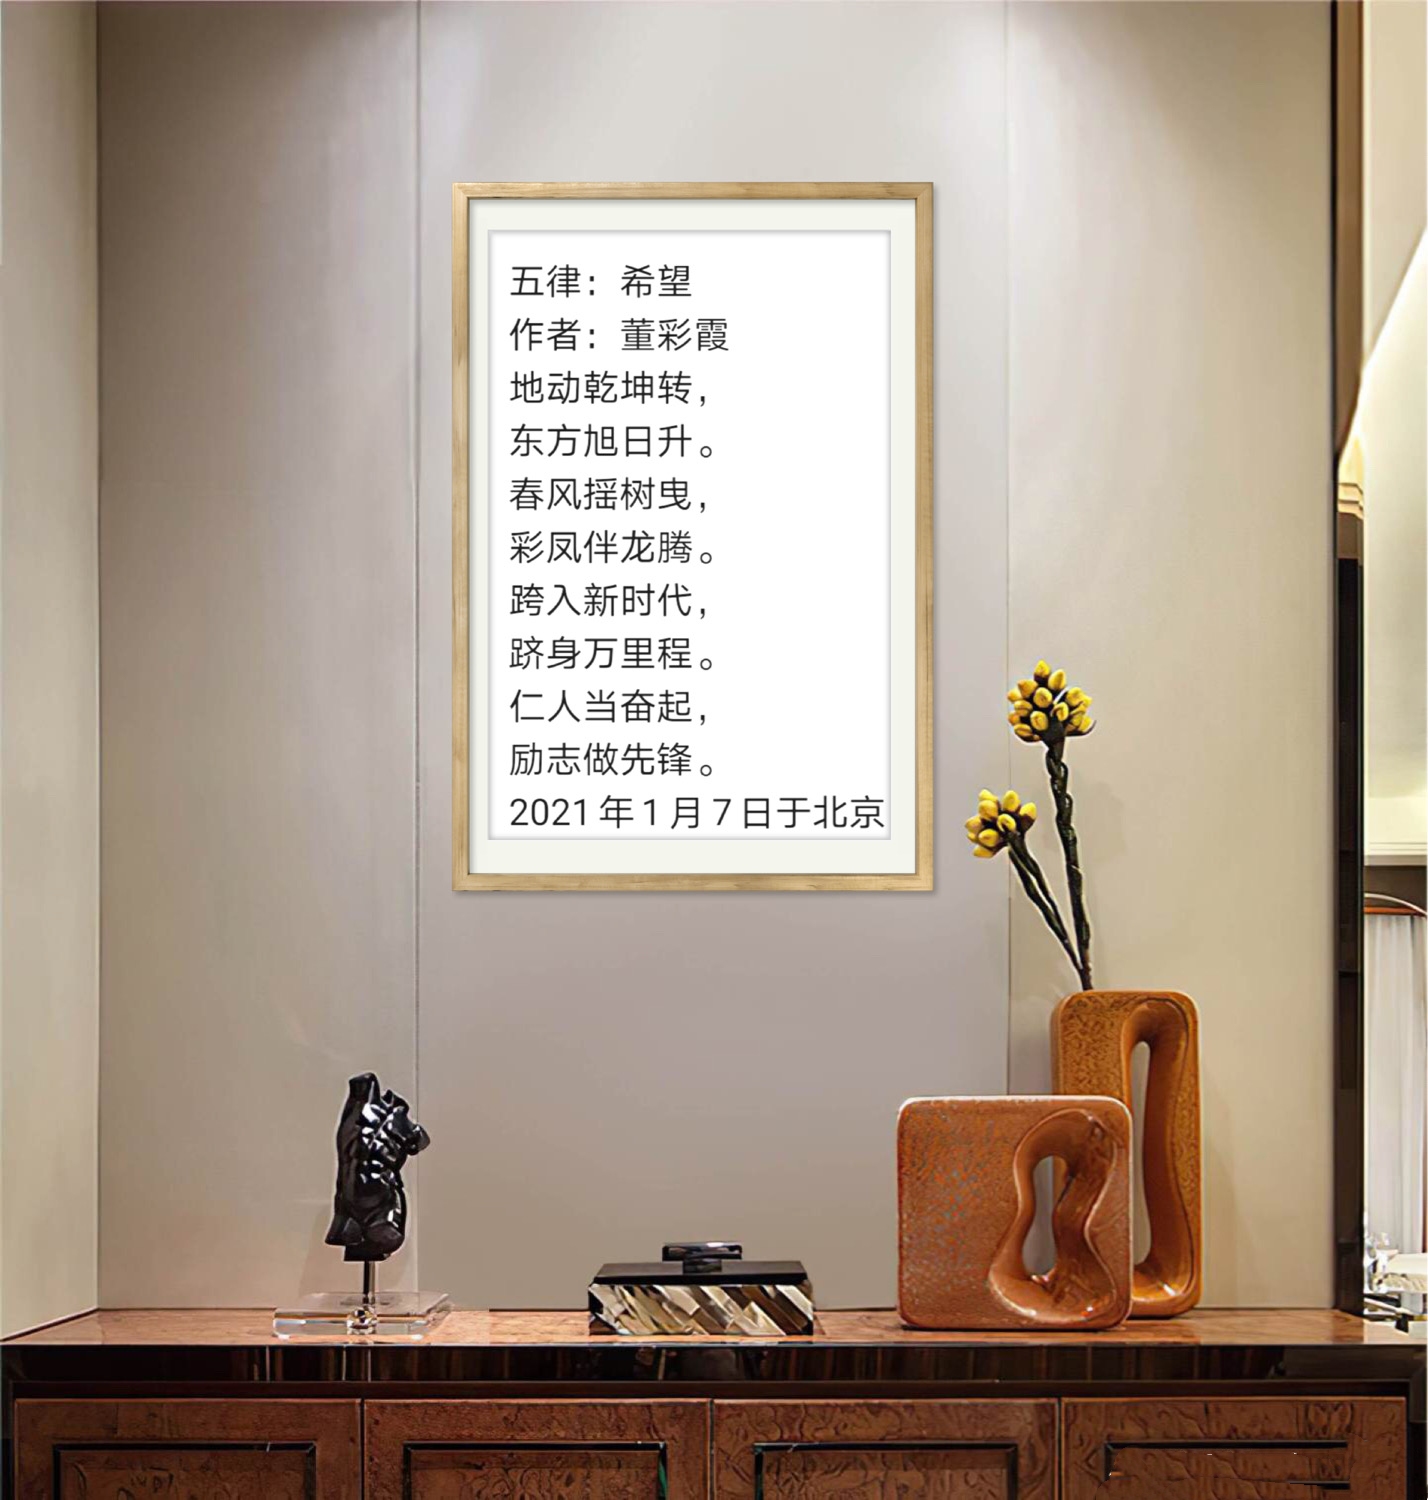 中国大众文化学会名人书画艺术发展委员会——董彩霞